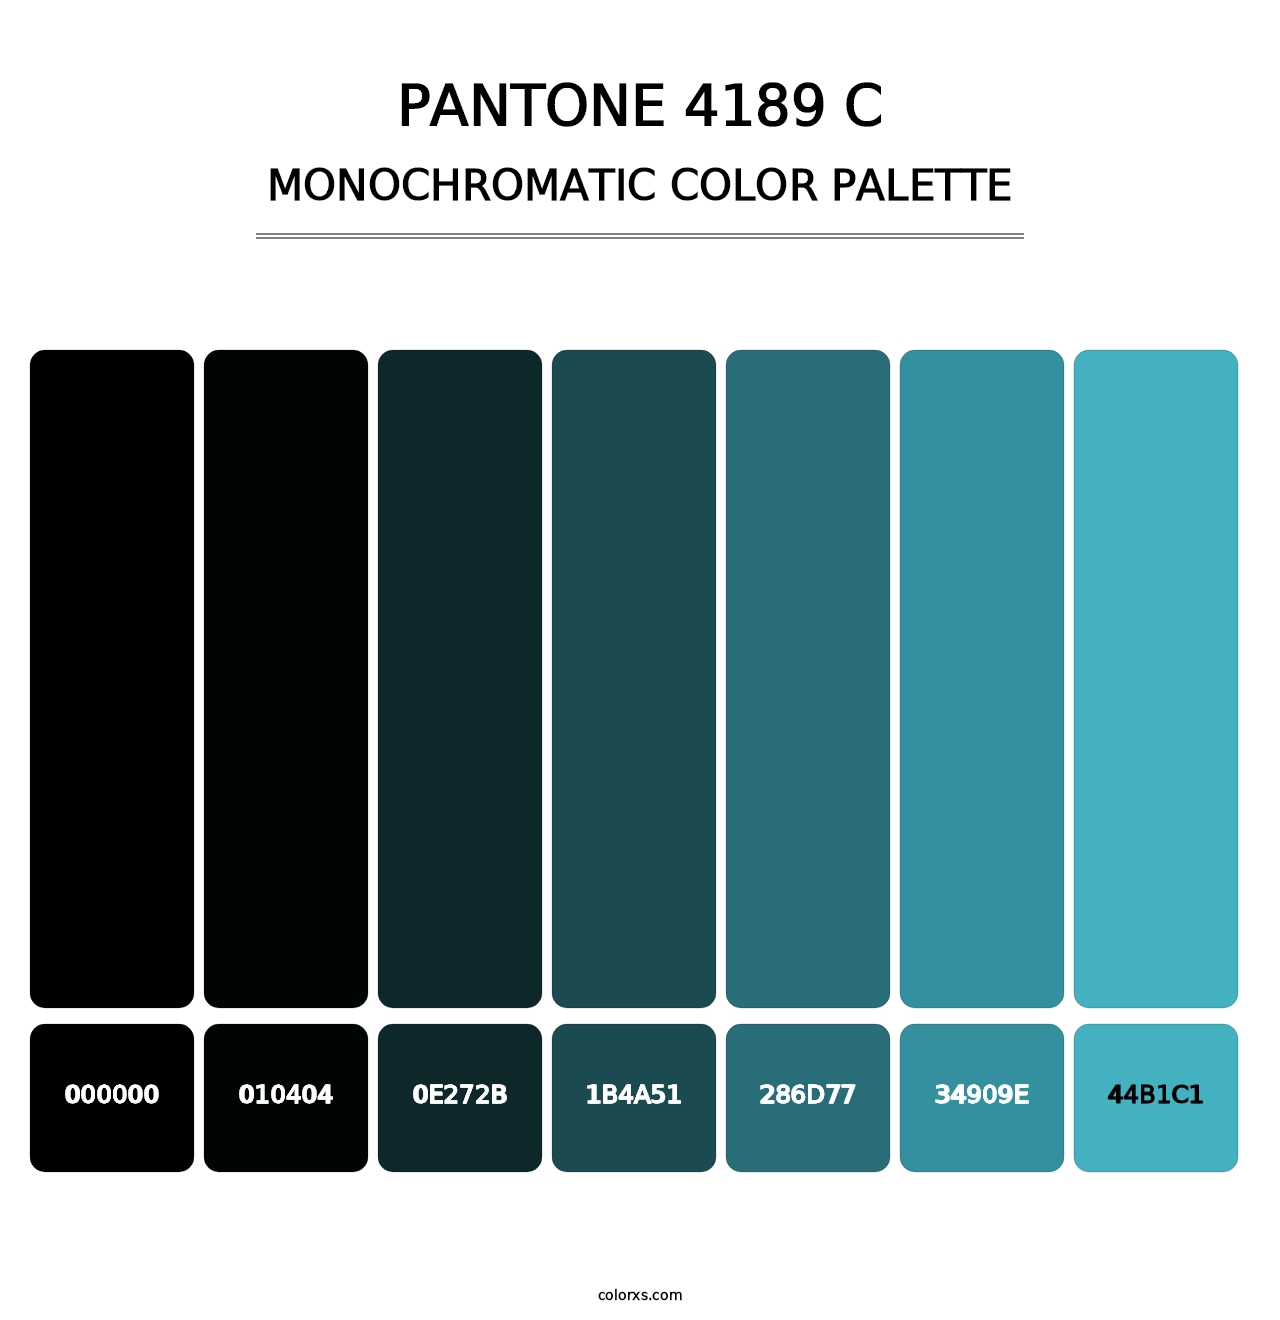 PANTONE 4189 C - Monochromatic Color Palette